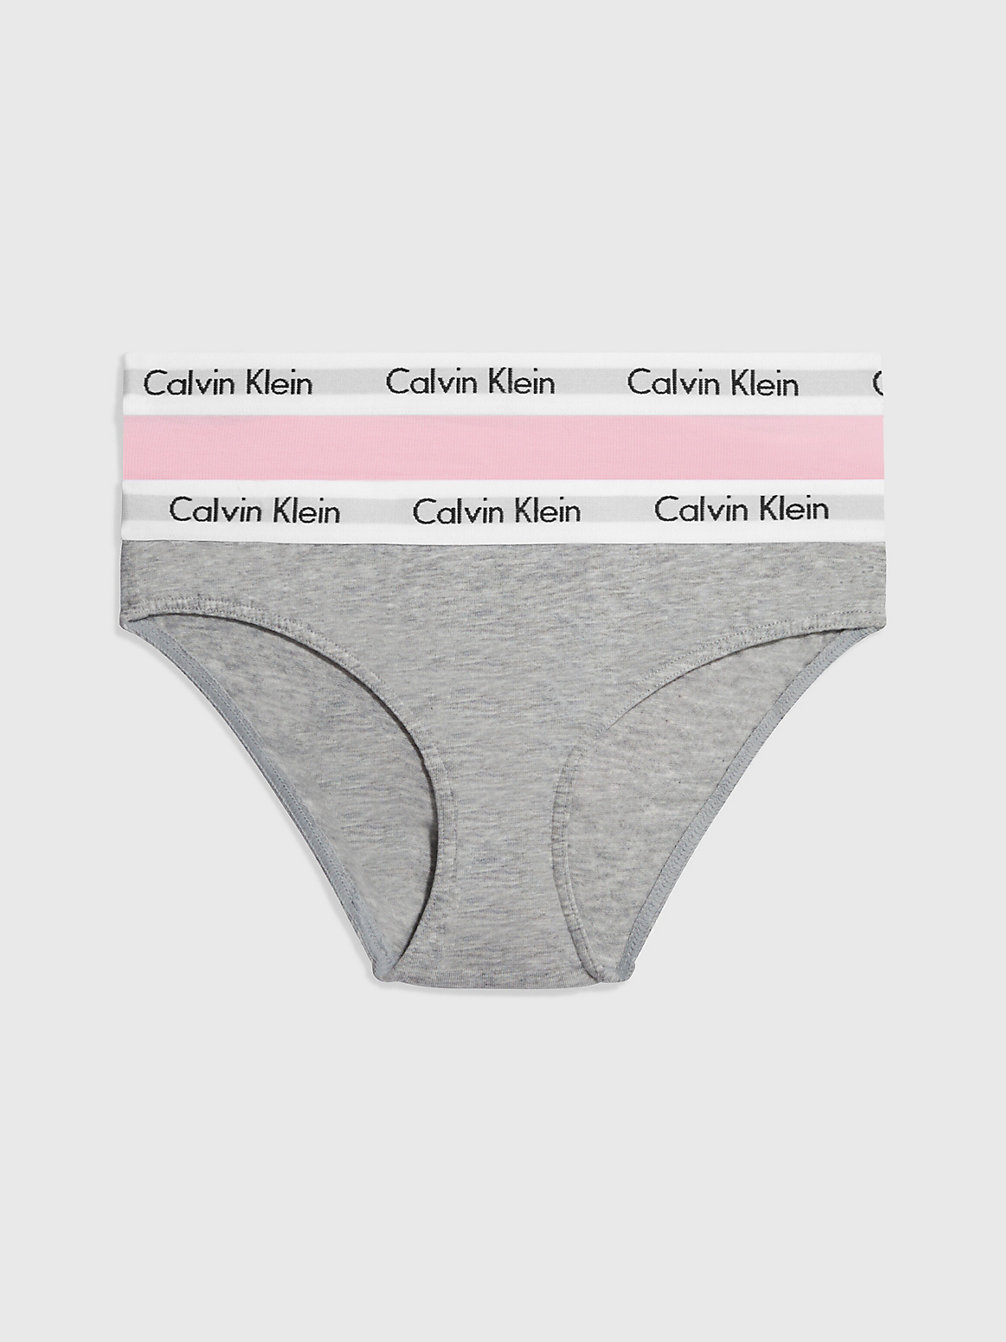 GREY HTR/UNIQUE Lot De 2 Culottes Pour Fille - Modern Cotton undefined girls Calvin Klein